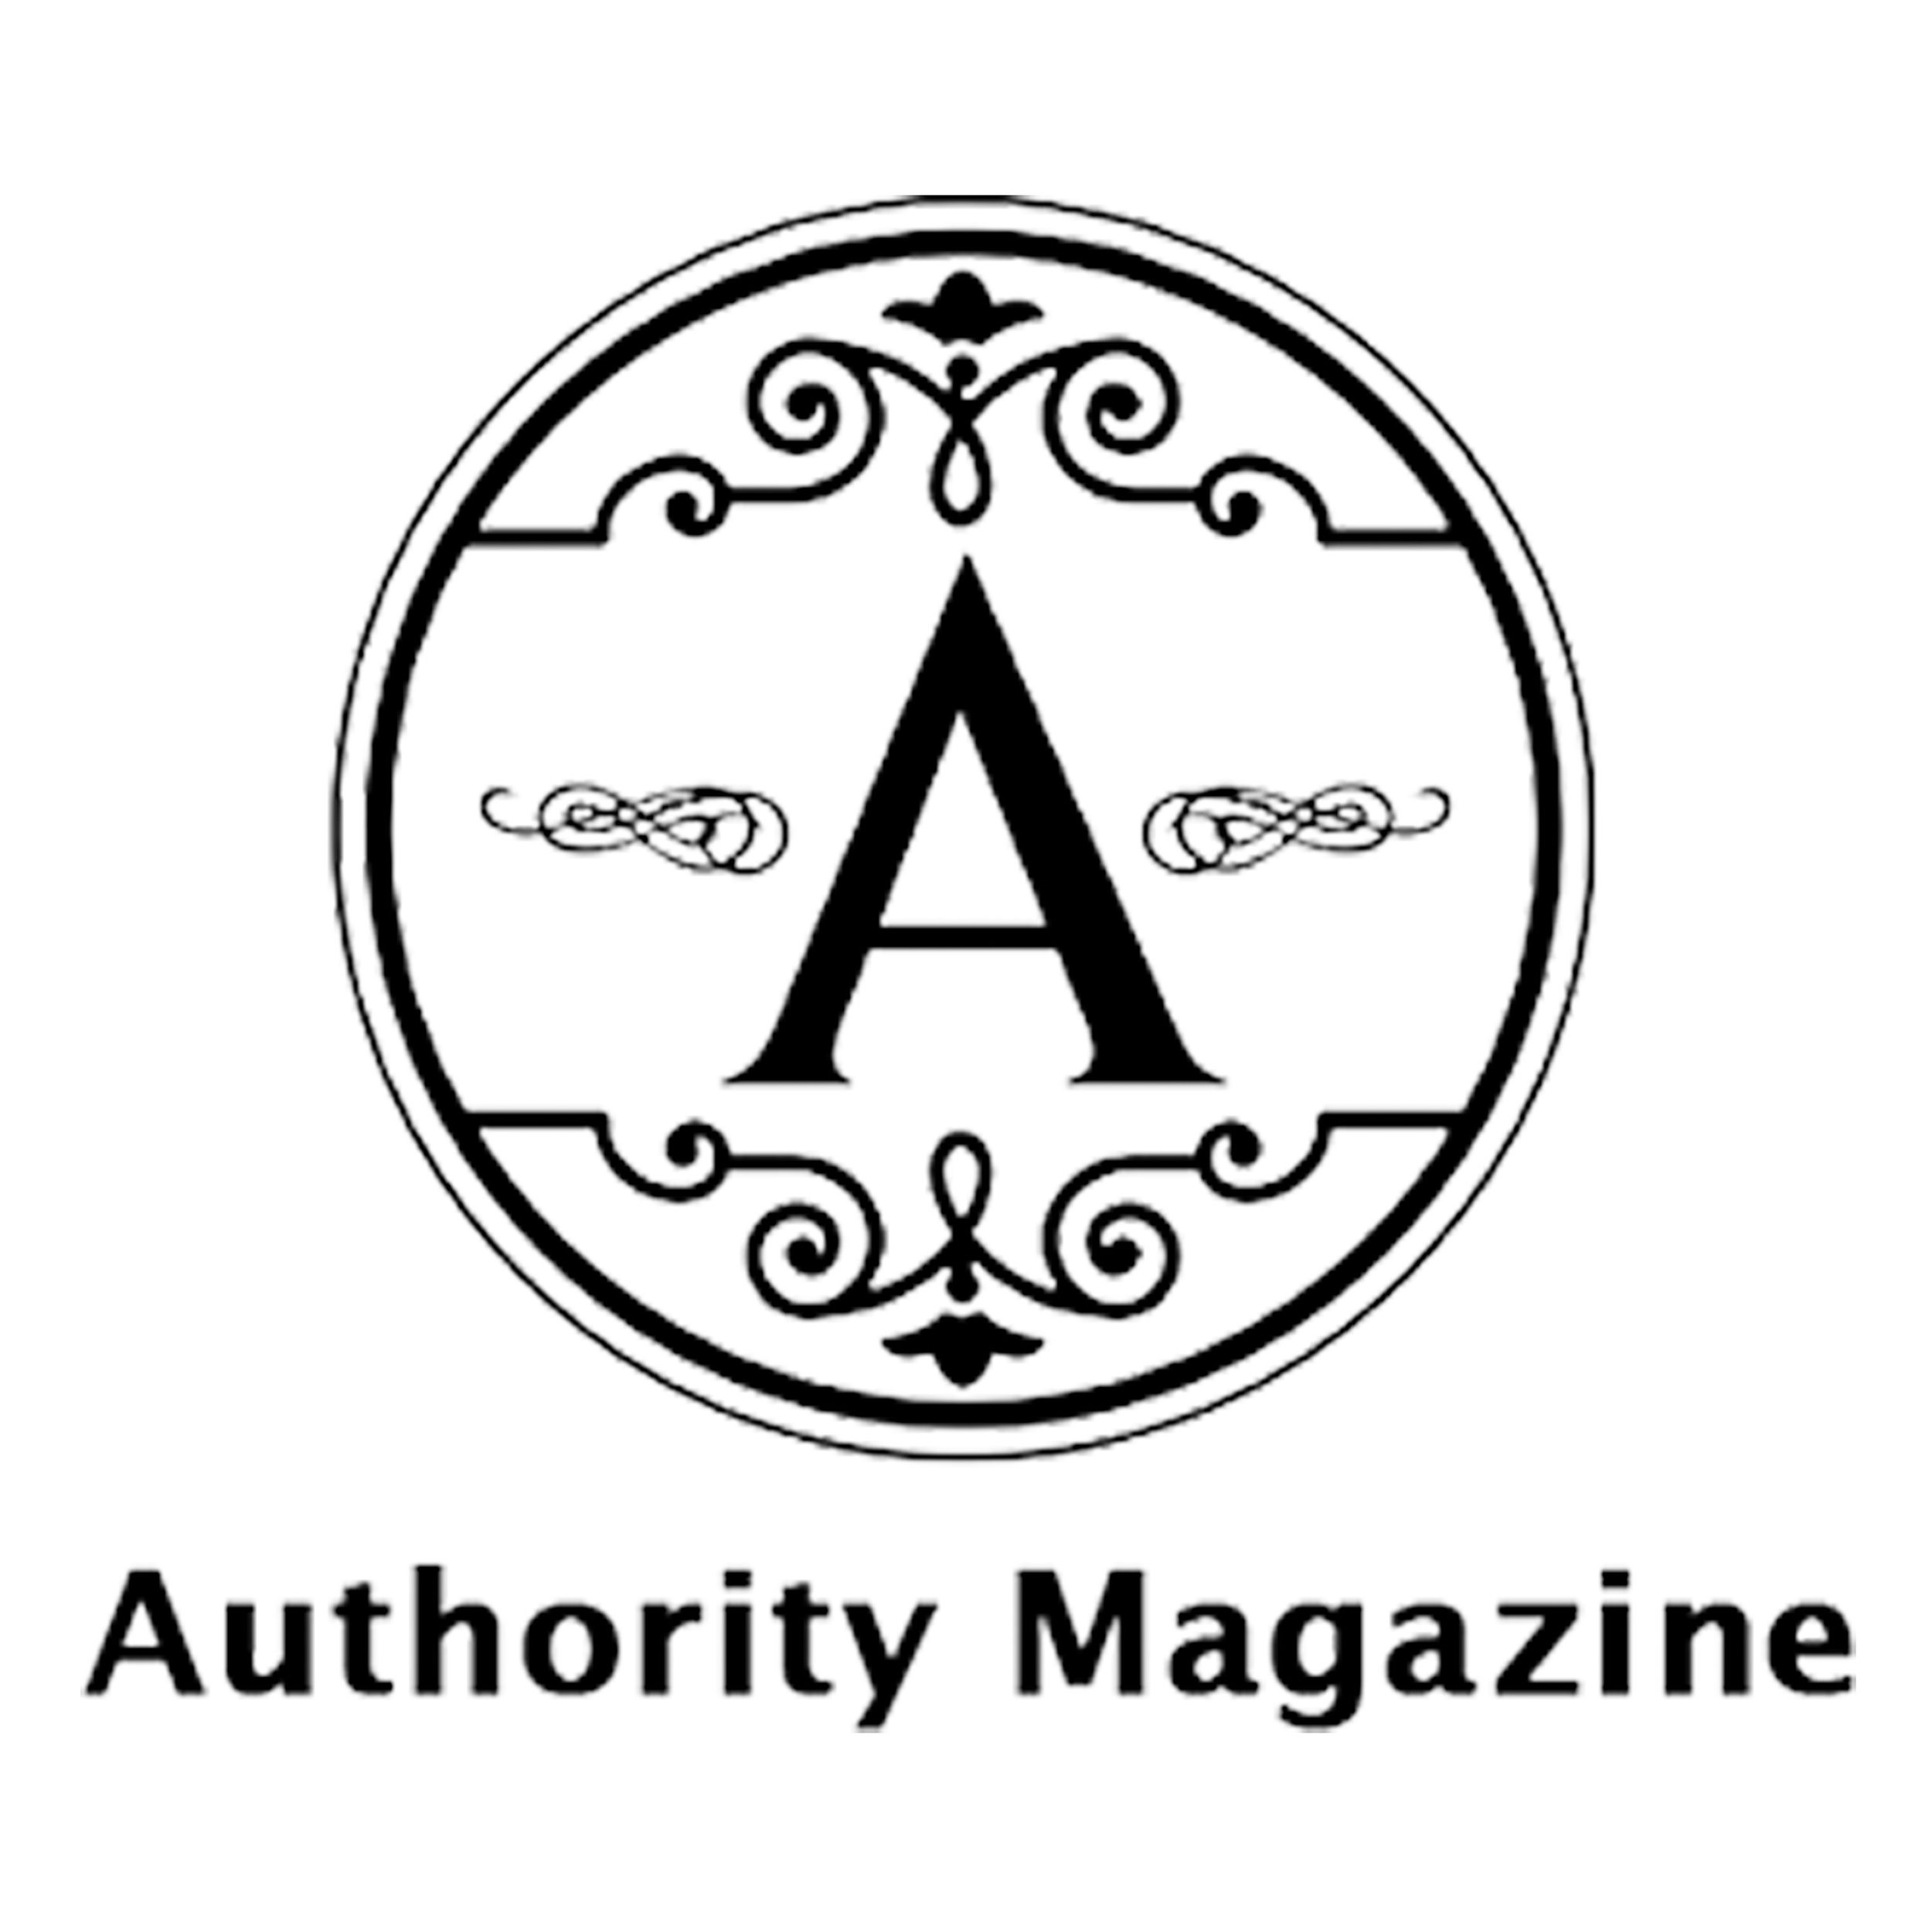 authority-logo